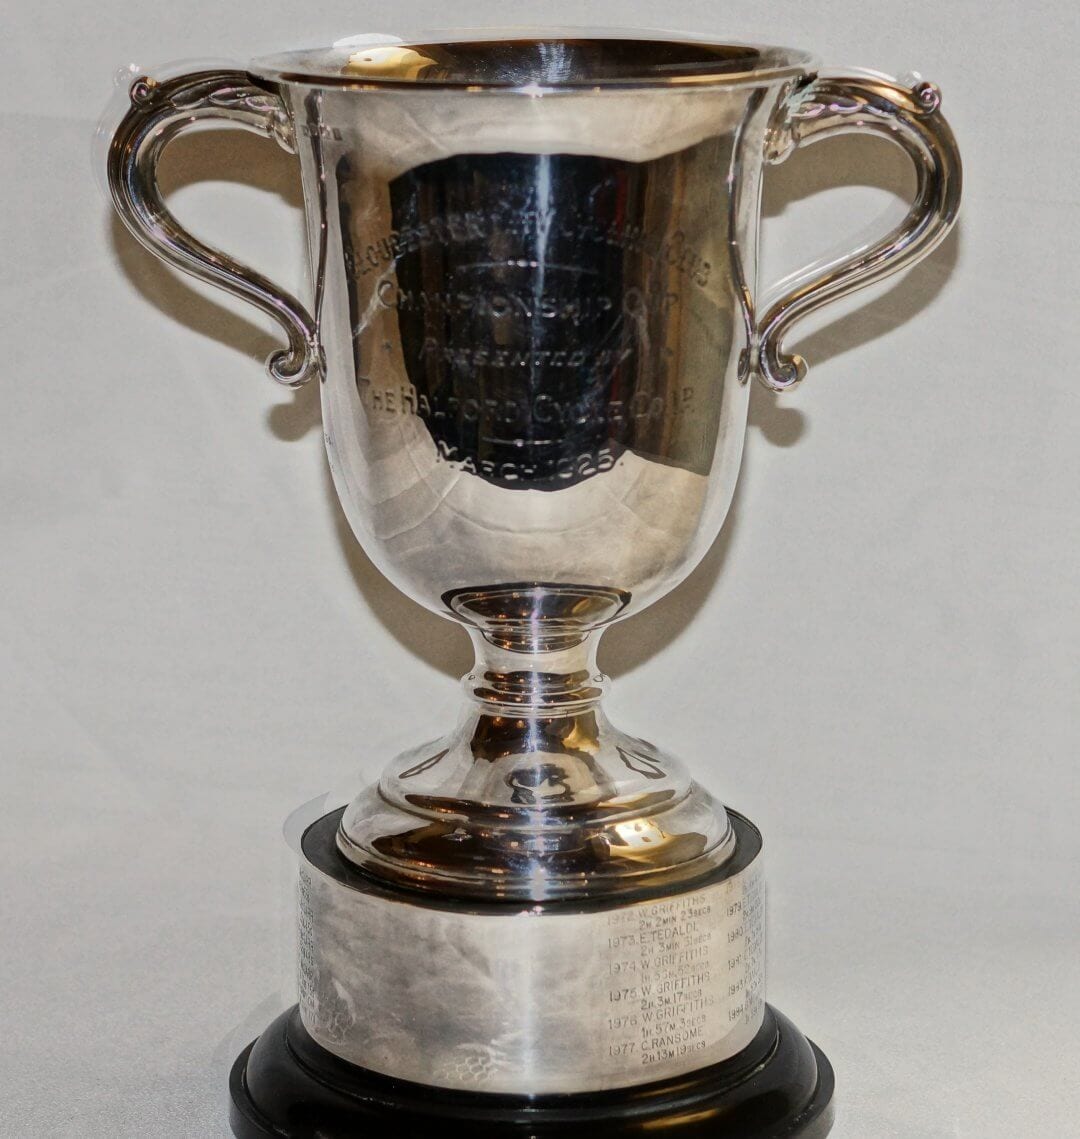 Halford Cup